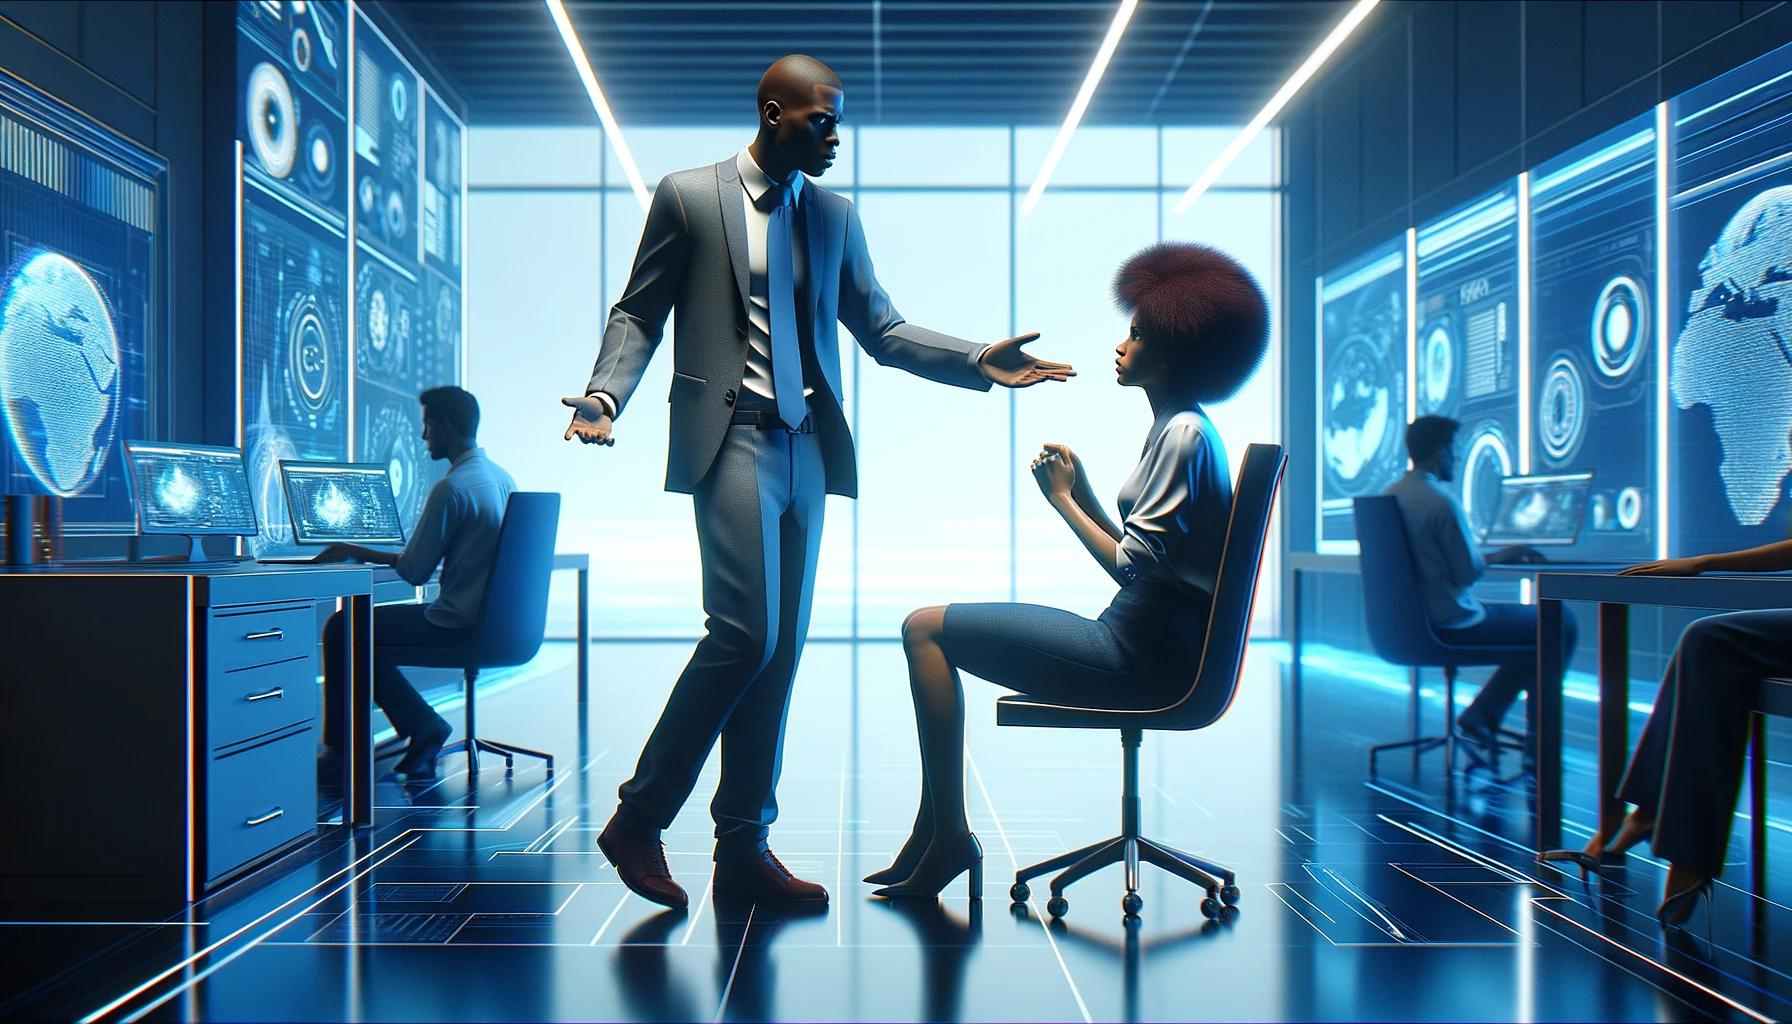 Um homem de pé interrompe uma mulher sentada durante uma reunião em um escritório futurista, ilustrando um momento de "Mansplaining e Manterrupting" na vida profissional.